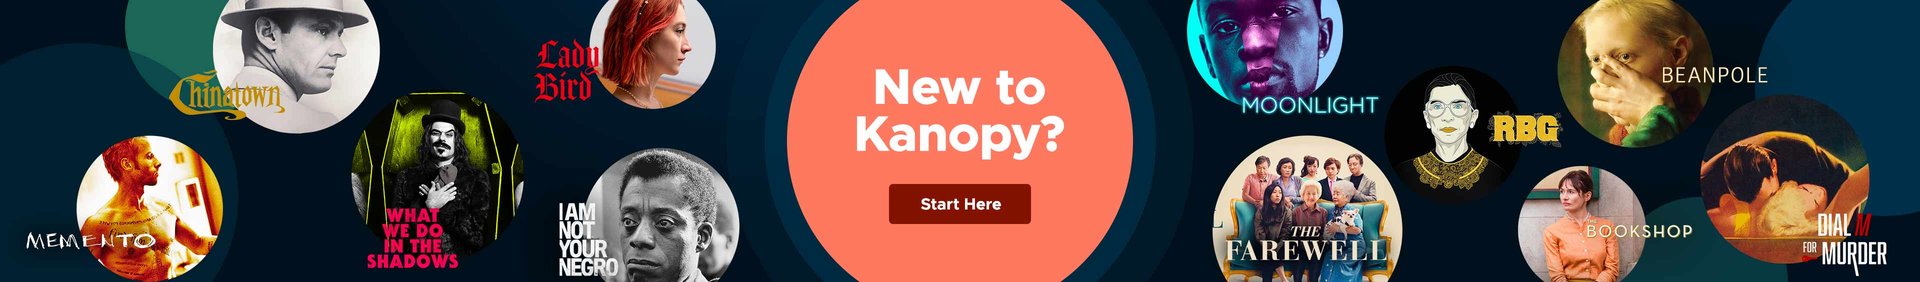 新的Kanopy文字与电影剧照